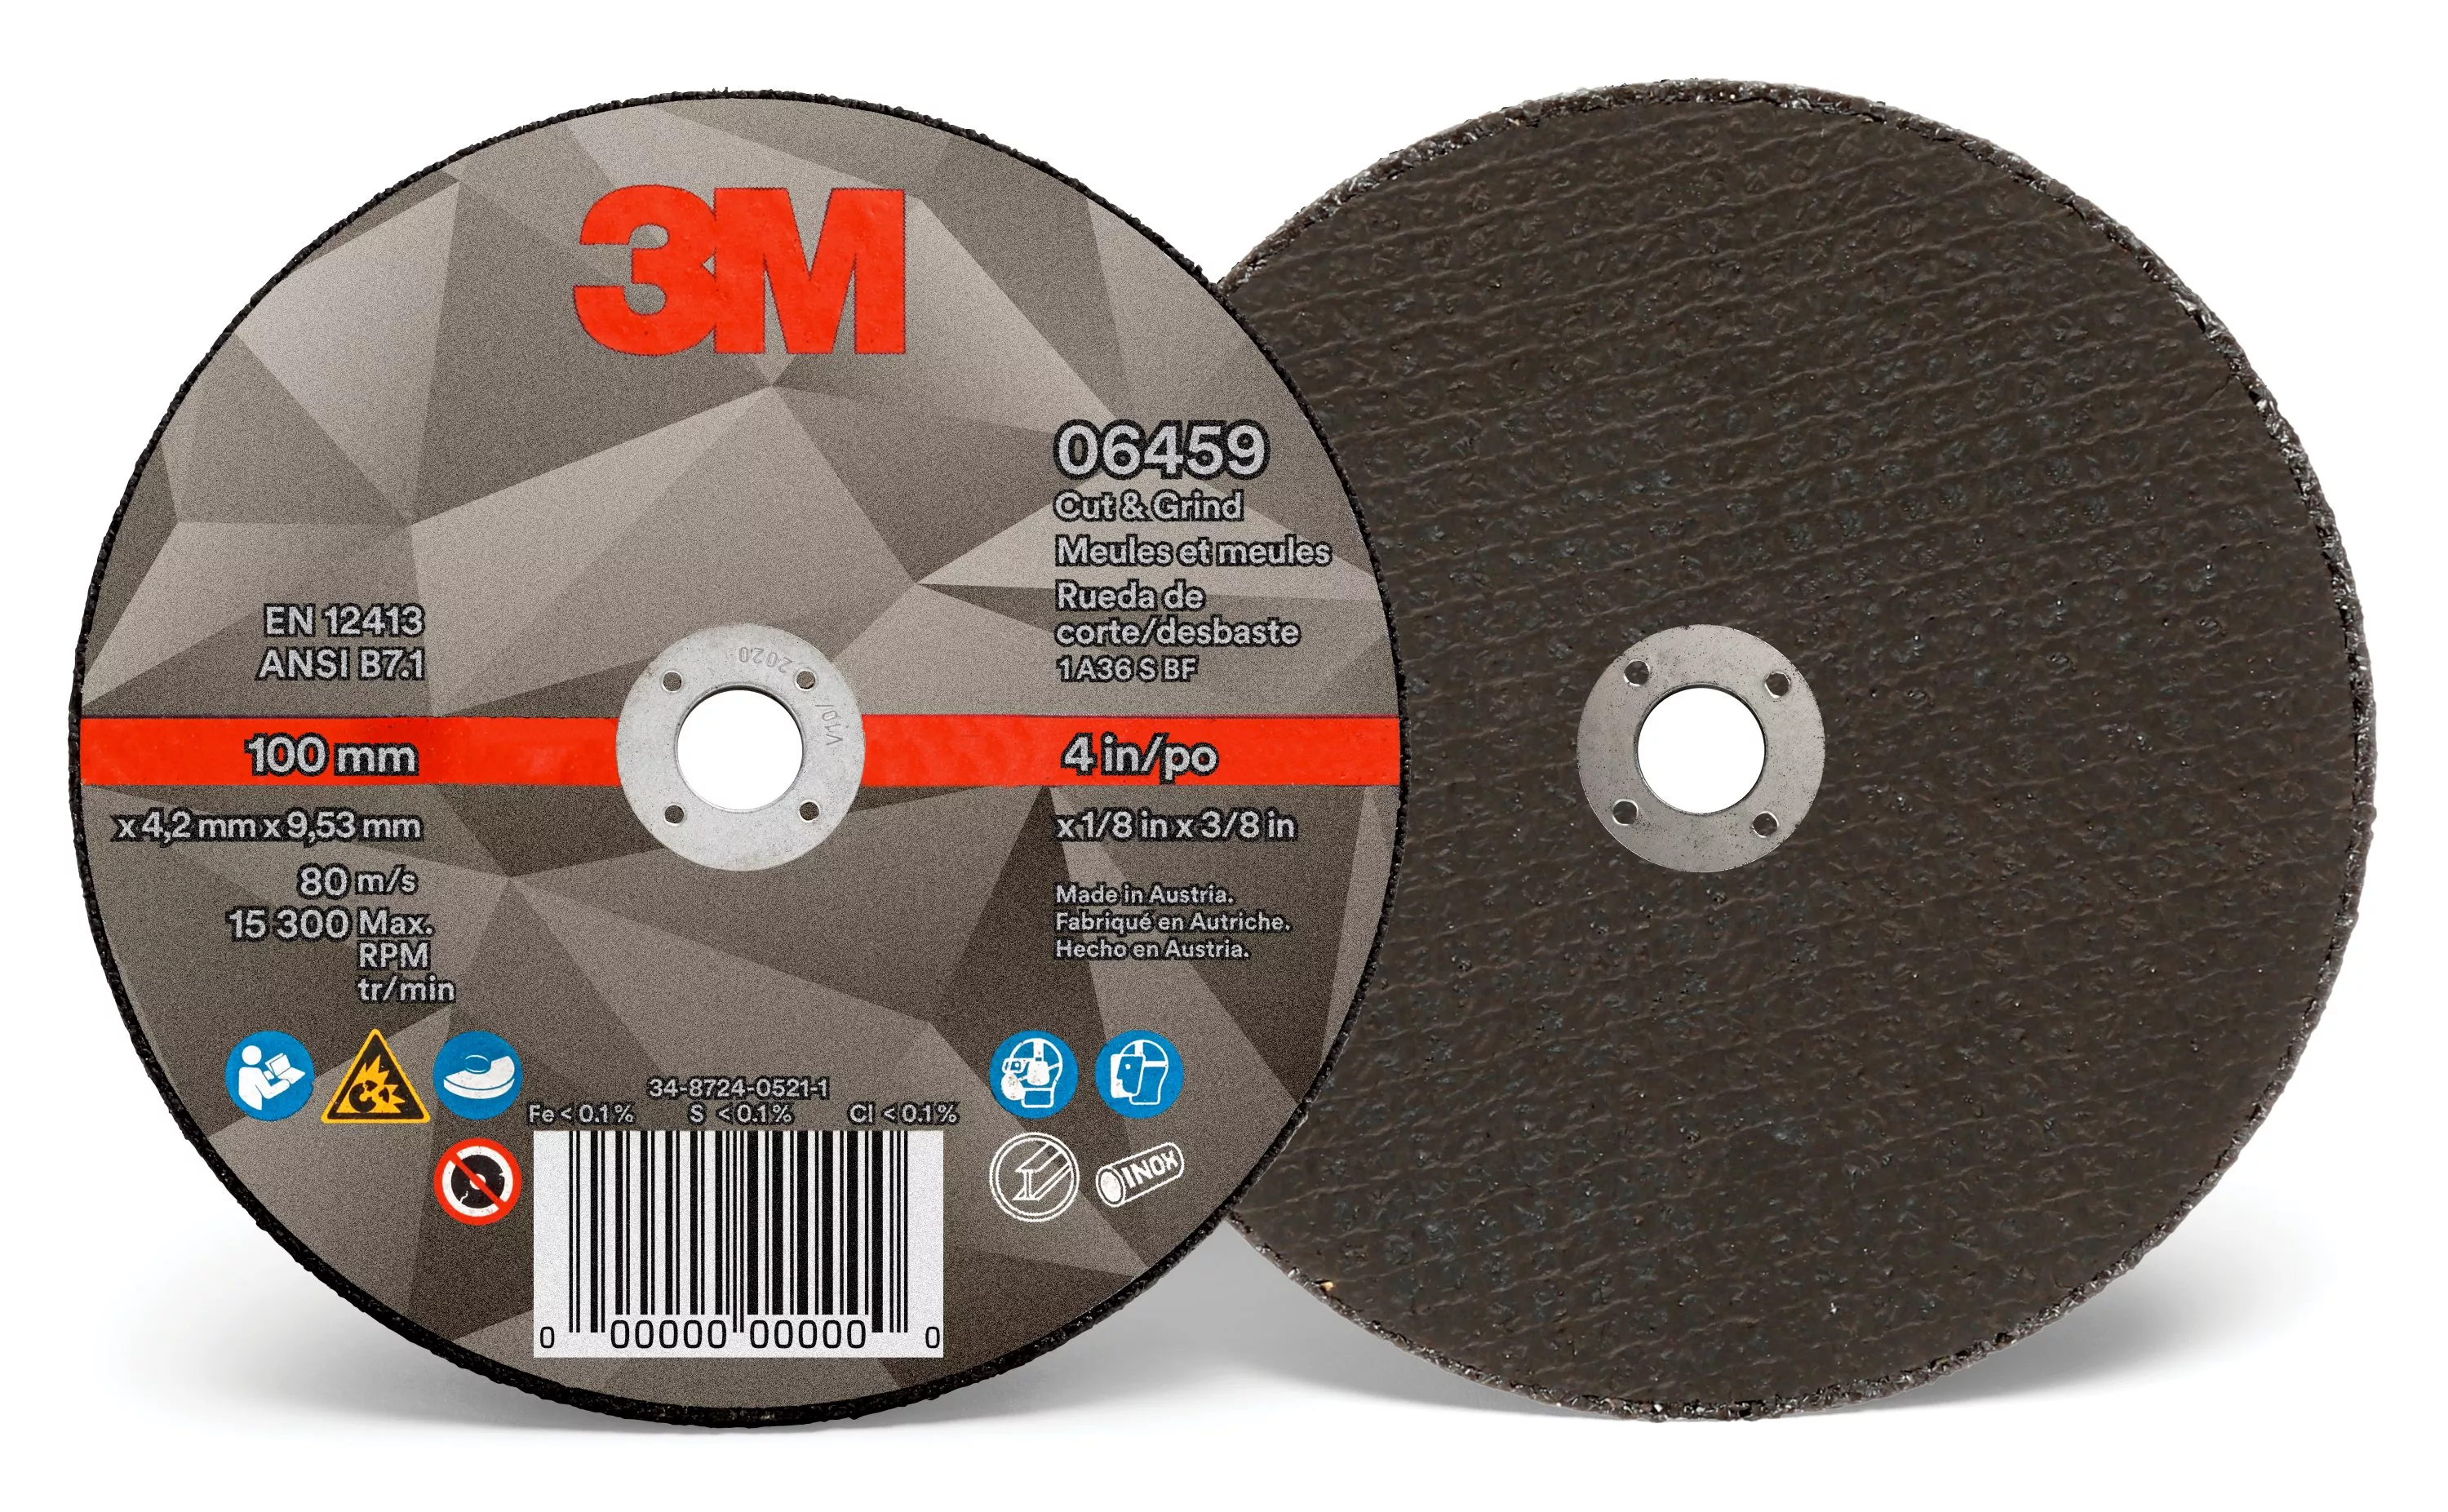 3M™ Cut & Grind Wheel, 06459, Type 1, 4 in x 1/8 in x 3/8 in, 10/Pac, 20
ea/Case